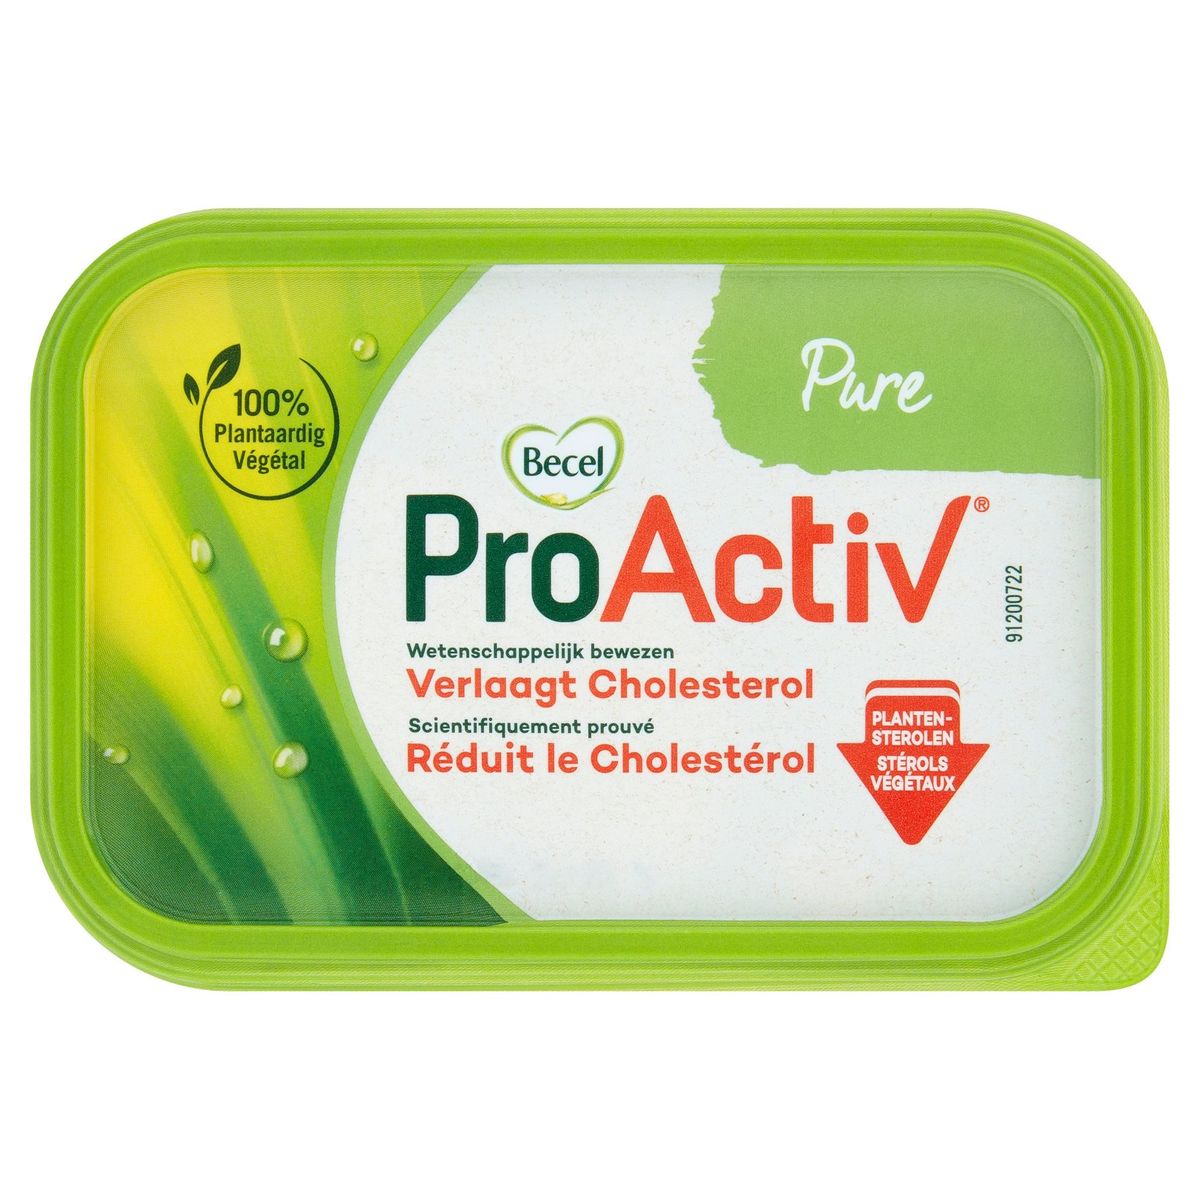 ProActiv | Réduit le cholestérol | Pure | 250g